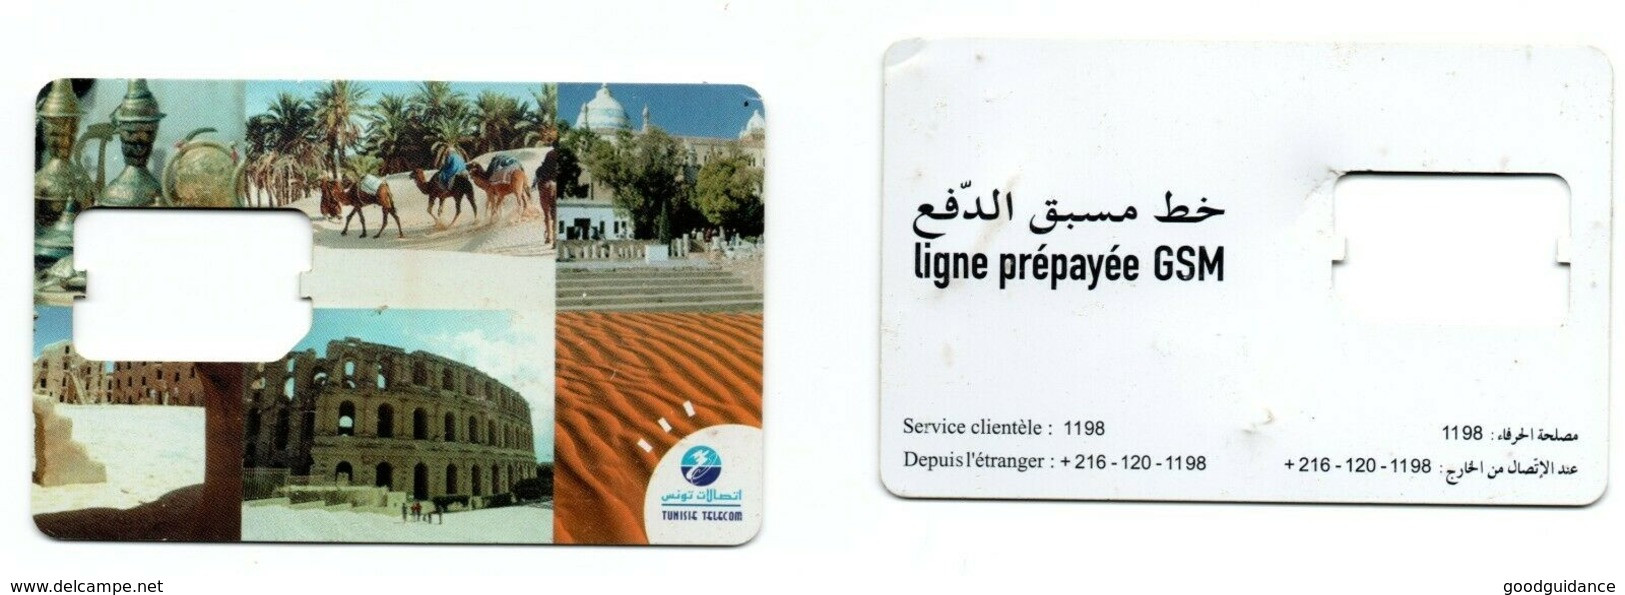 Tunisia - Tunisie - SIM Card- Tunisie Telecom- Desert- Colosseum- Camels- Used- Excellent - Tunisie